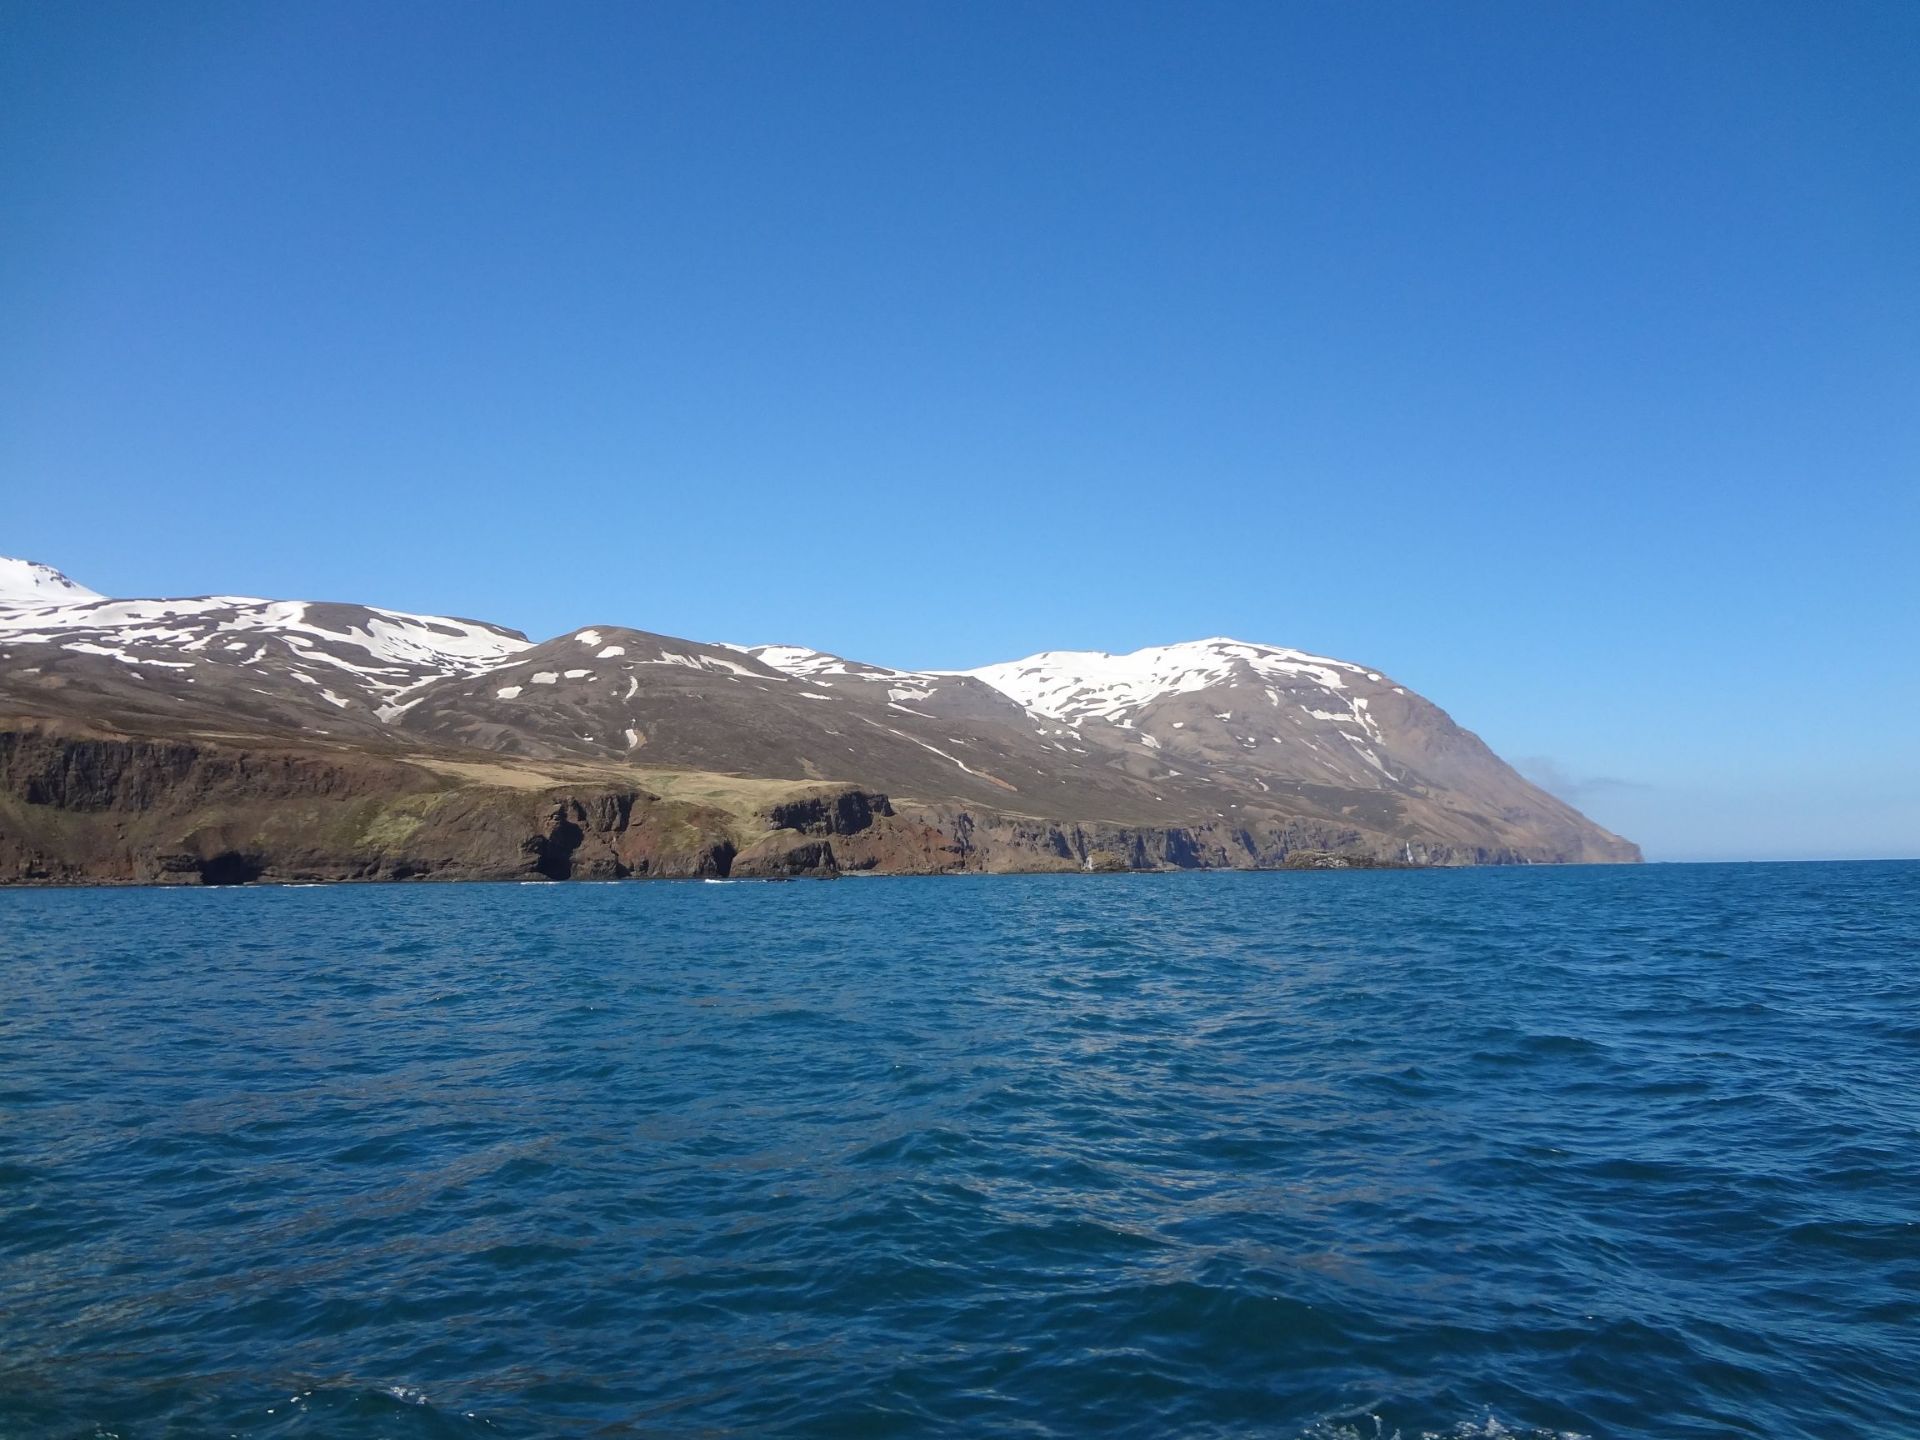 来冰岛不可错过的观鲸之旅，这里的鲸鱼才是鲸鱼，比日本冲绳的多多了，观鲸鱼的木船也非常有特色，都是木制